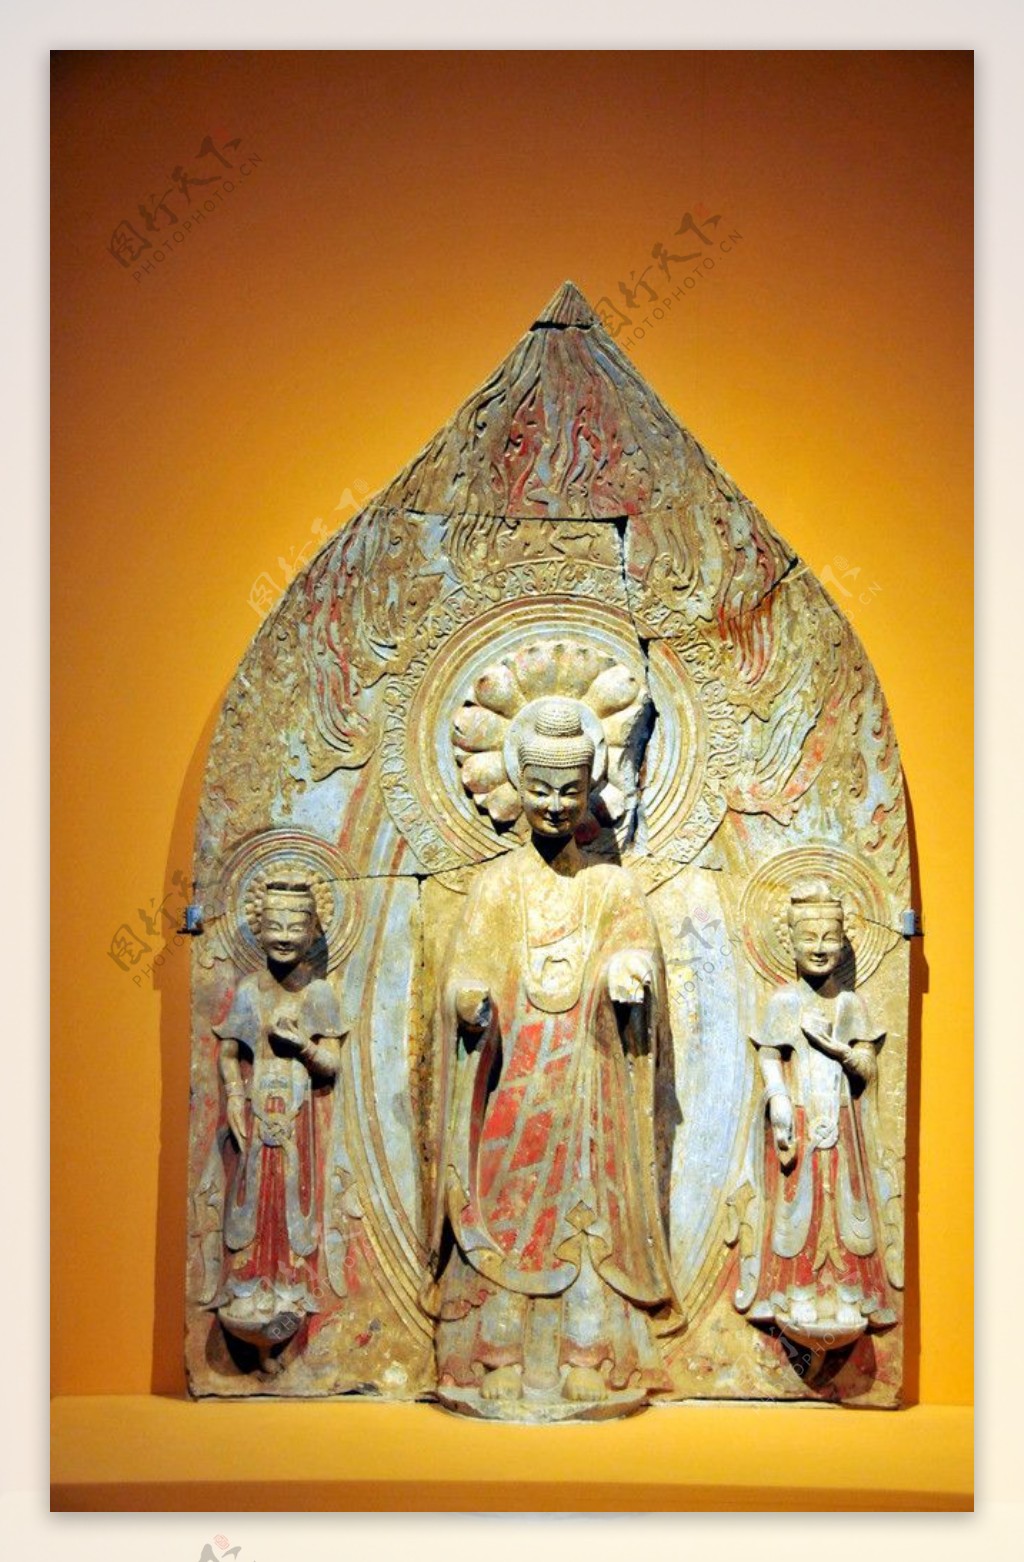 彩绘贴金石雕佛菩萨三尊立像图片